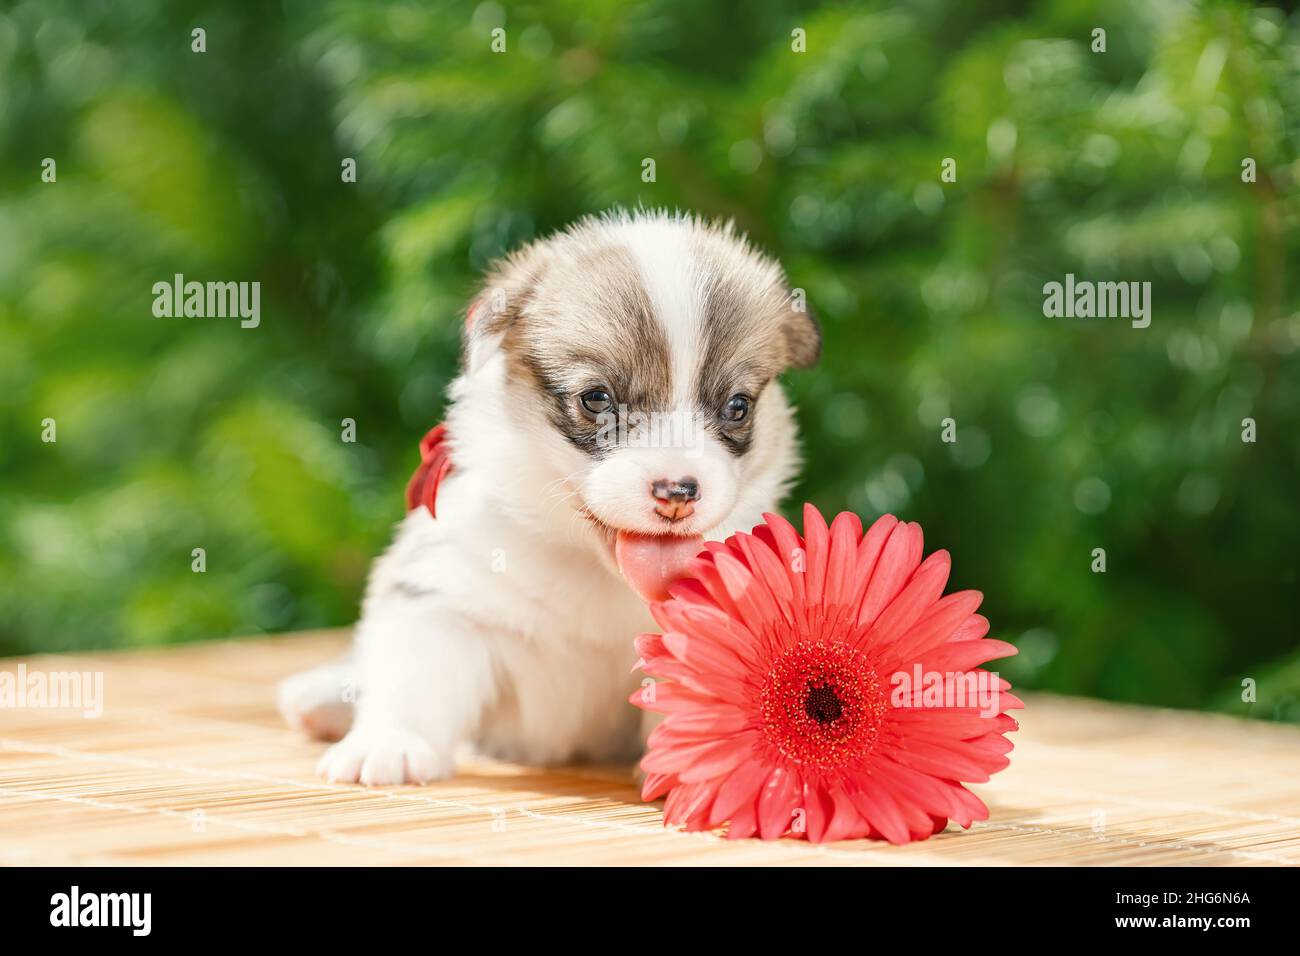 Drôle petit chiot de pembroke gallois chien de race corgi couché à l'extérieur près de fleur rose Banque D'Images